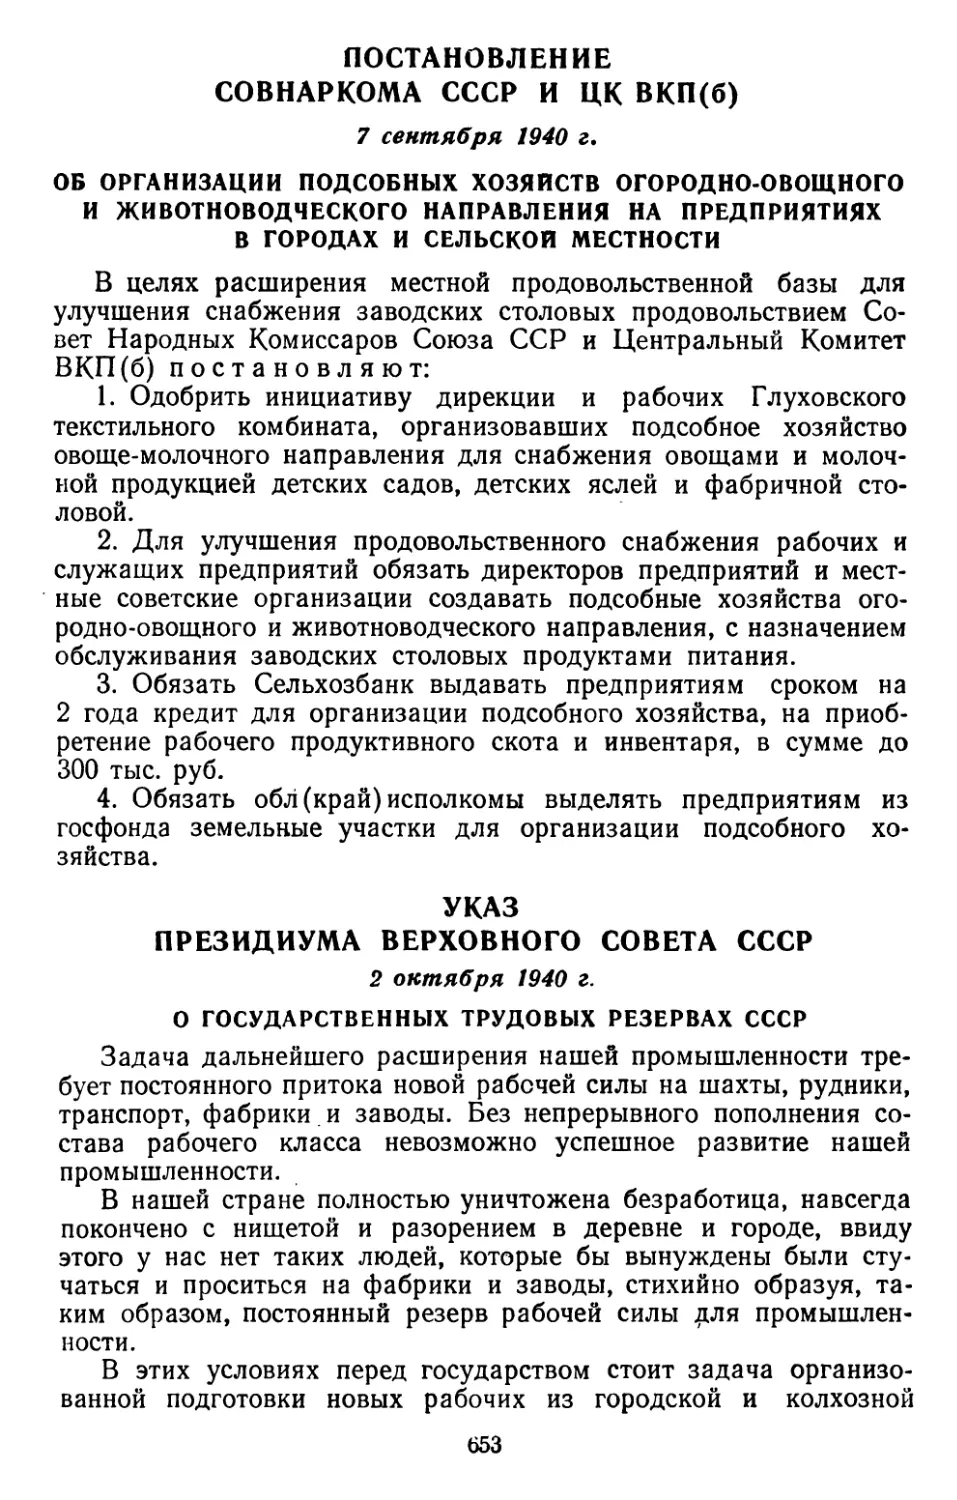 Указ Президиума Верховного Совета СССР, 2 октября 1940 г. О государственных трудовых резервах СССР